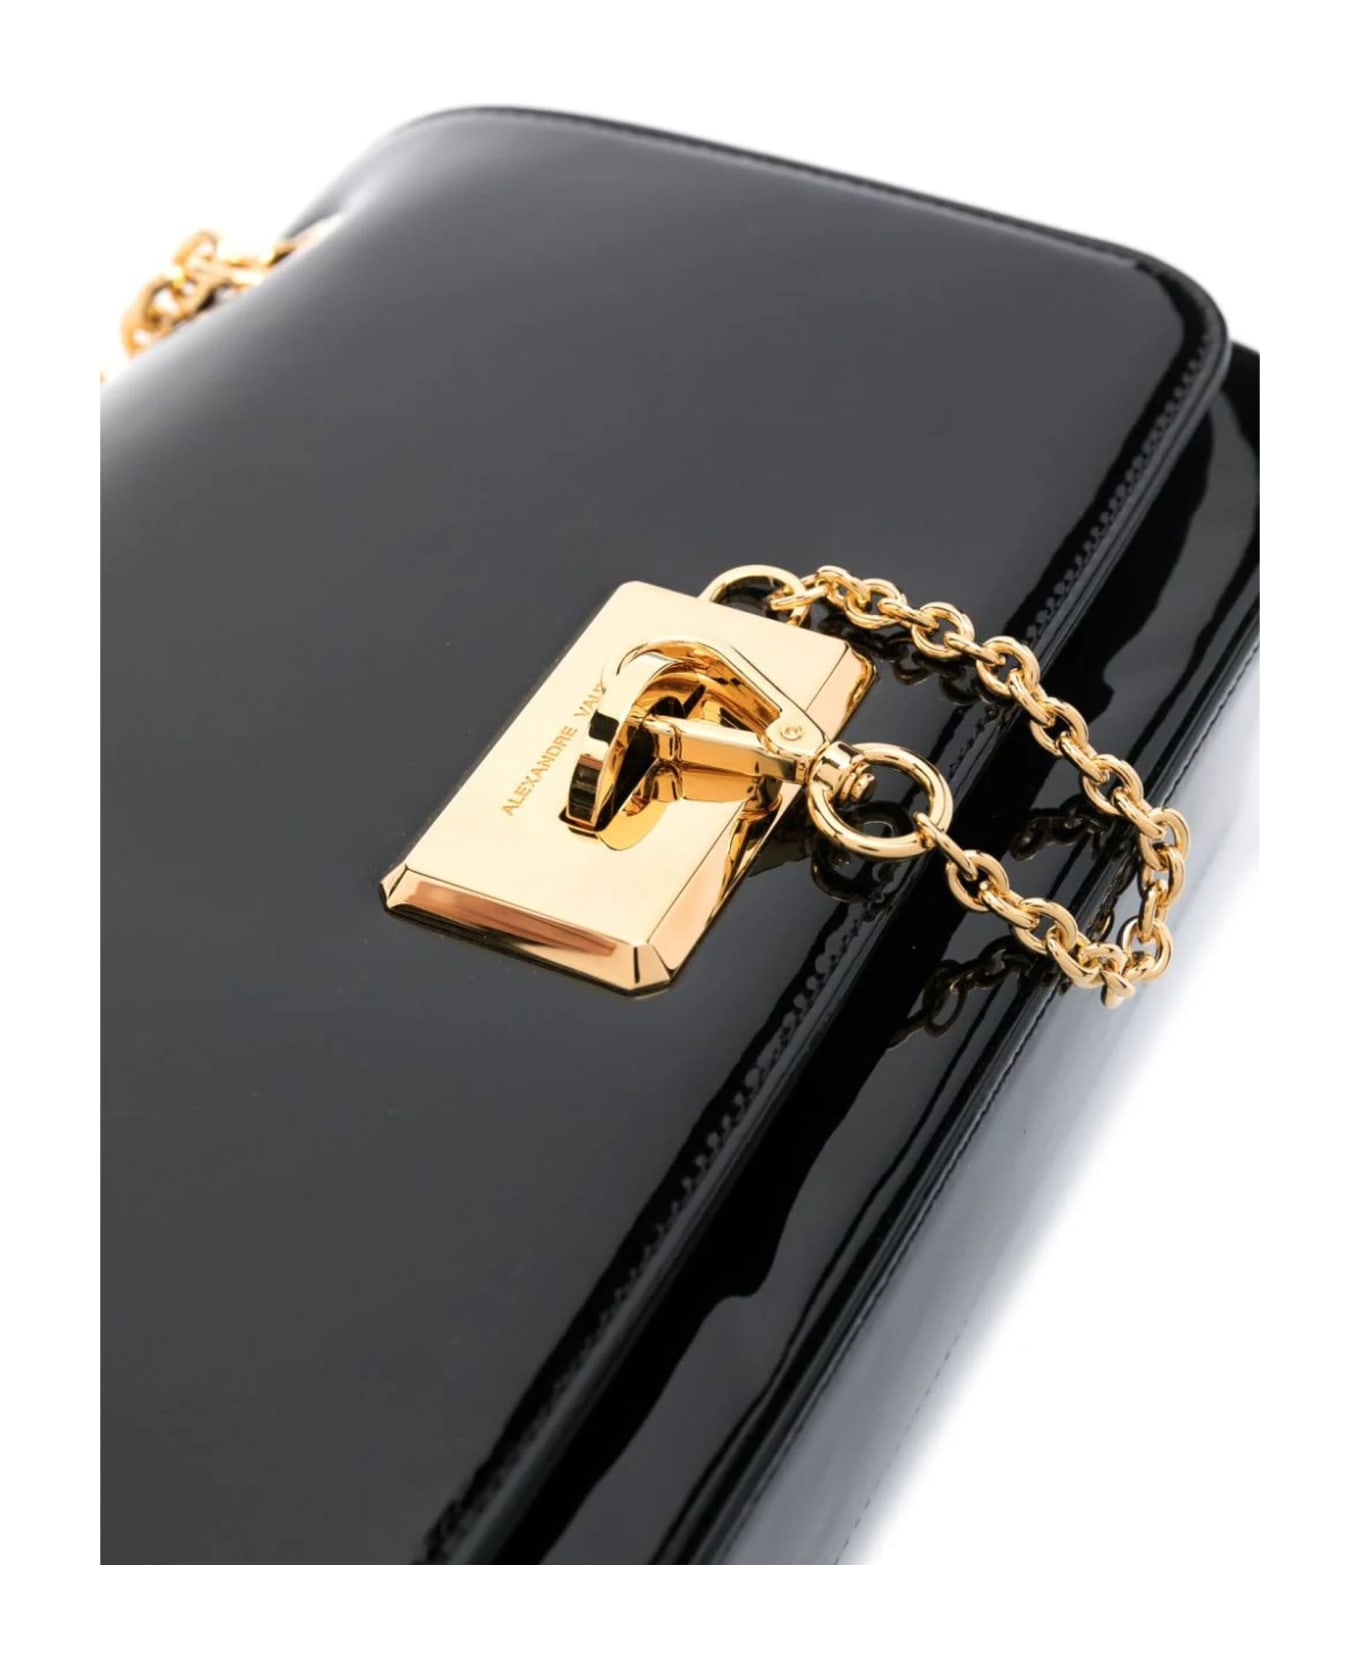 Alexandre Vauthier Le4 Patent Leather Shoulder Bag - Black